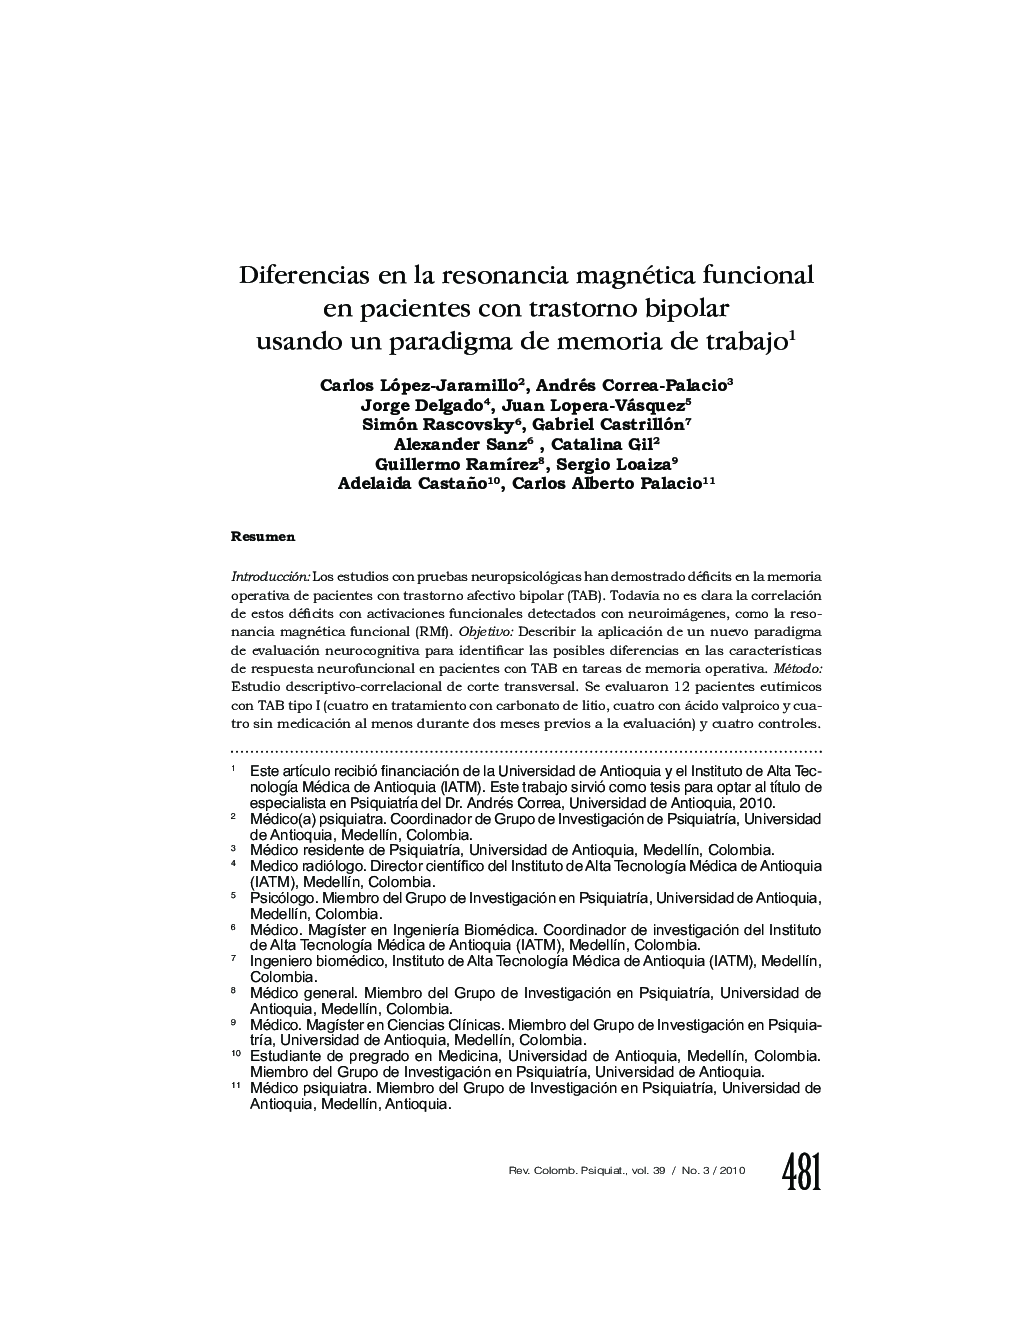 Diferencias en la resonancia magnética funcional en pacientes con trastorno bipolar usando un paradigma de memoria de trabajo1
		